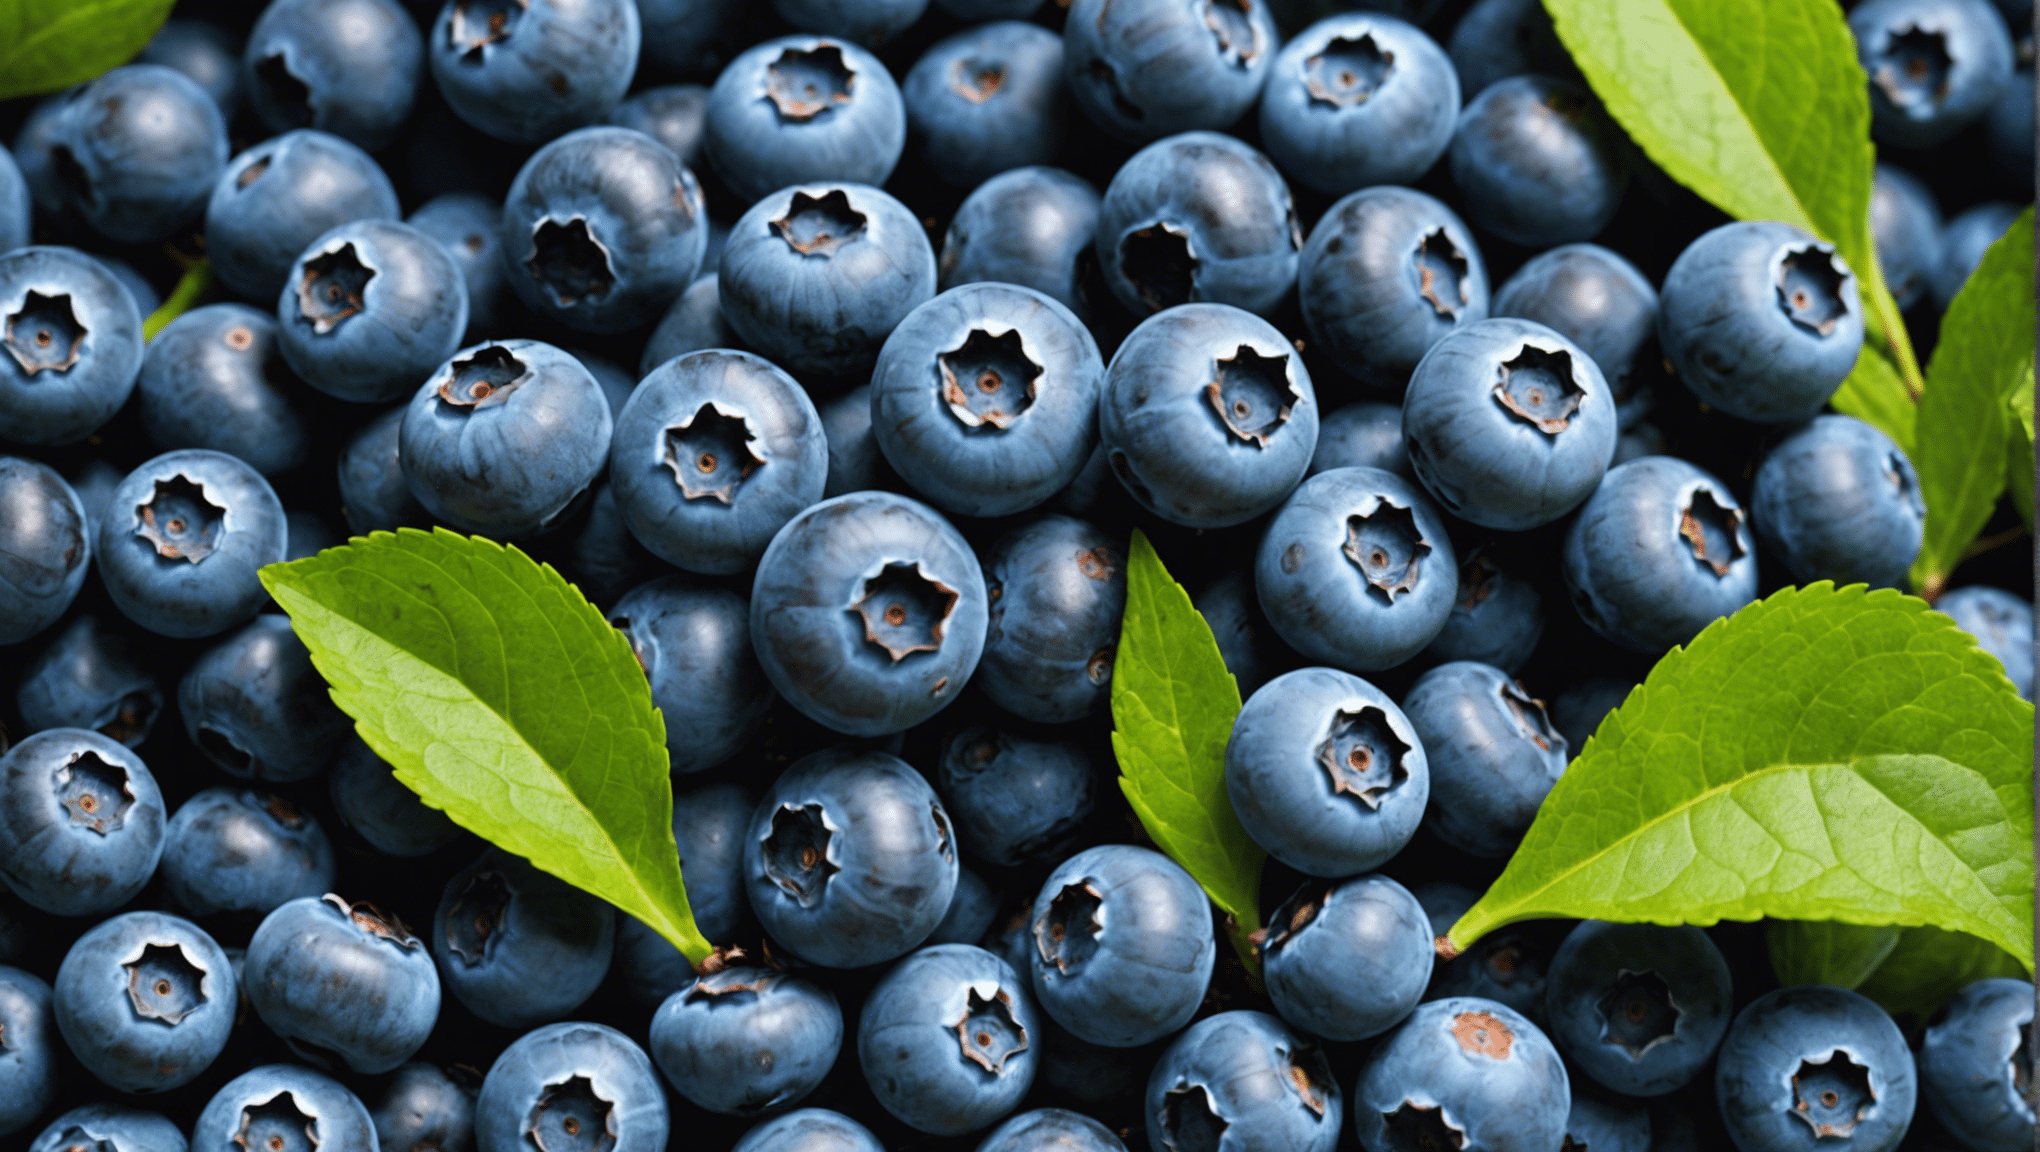 upptäck hälsofördelarna med blåbärsfrön i den här omfattande guiden. lär dig varför blåbärsfrön är bra för dig och hur du kan införliva dem i din kost.